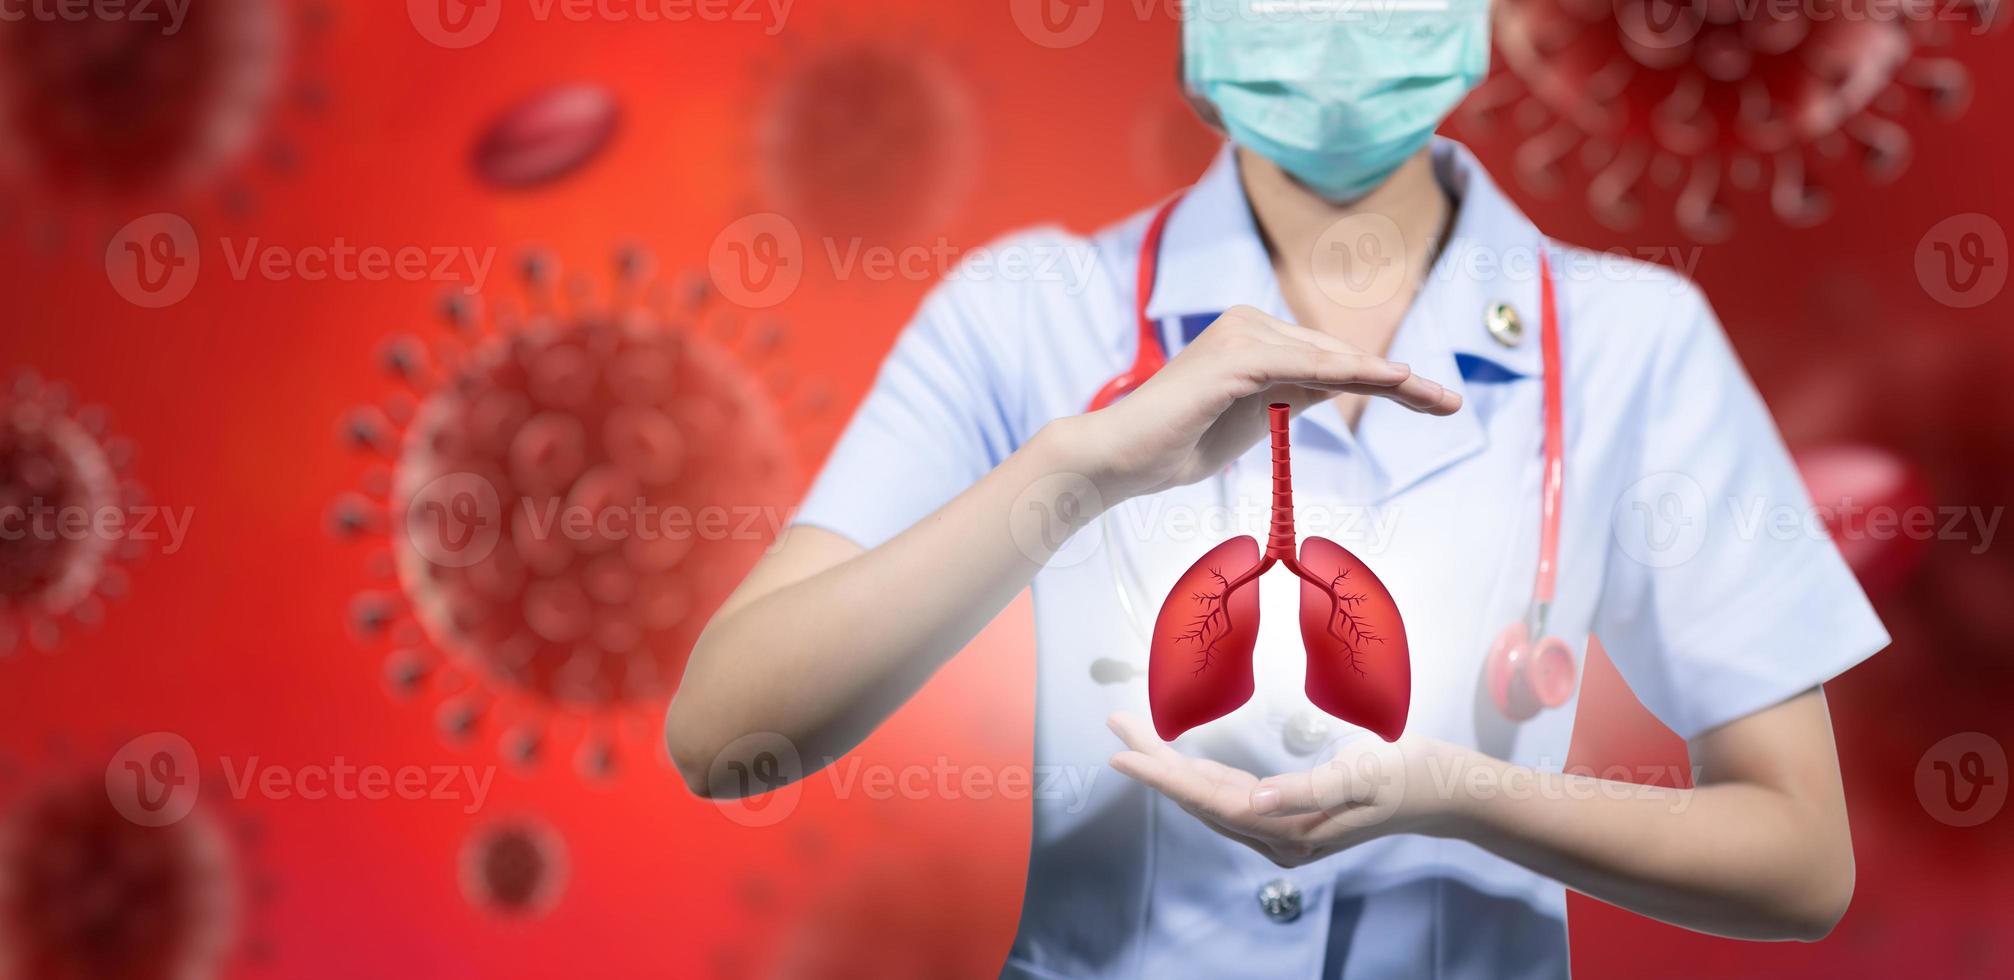 o médico levantou a mão, o pulmão e o vírus corona em sua mão esquerda e direita. foto